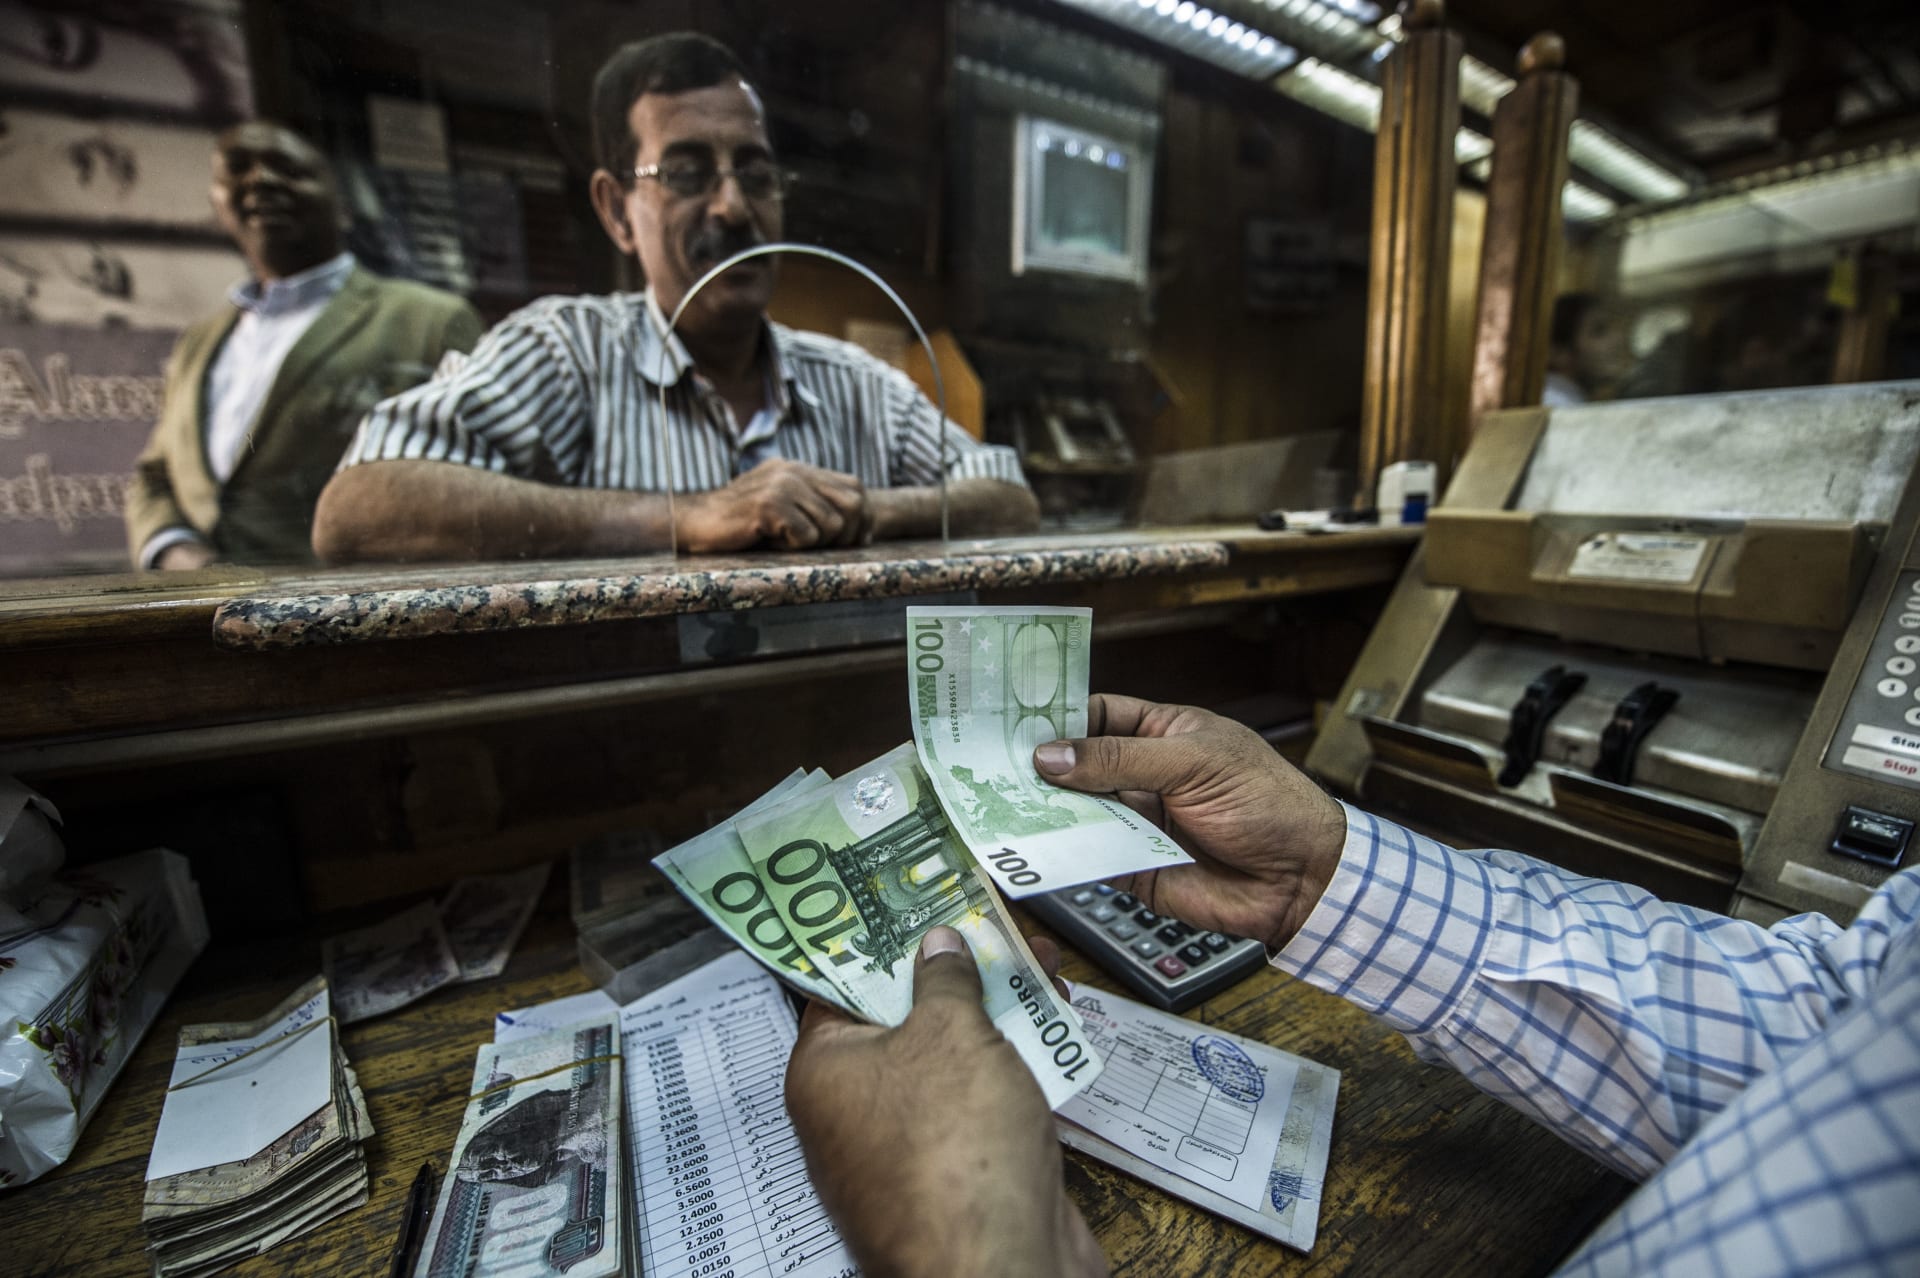 مصر تحرك سعر الجنيه أمام الدولار تزامنا مع رفع سعر الفائدة.. هذا ما قاله خبراء لـCNN